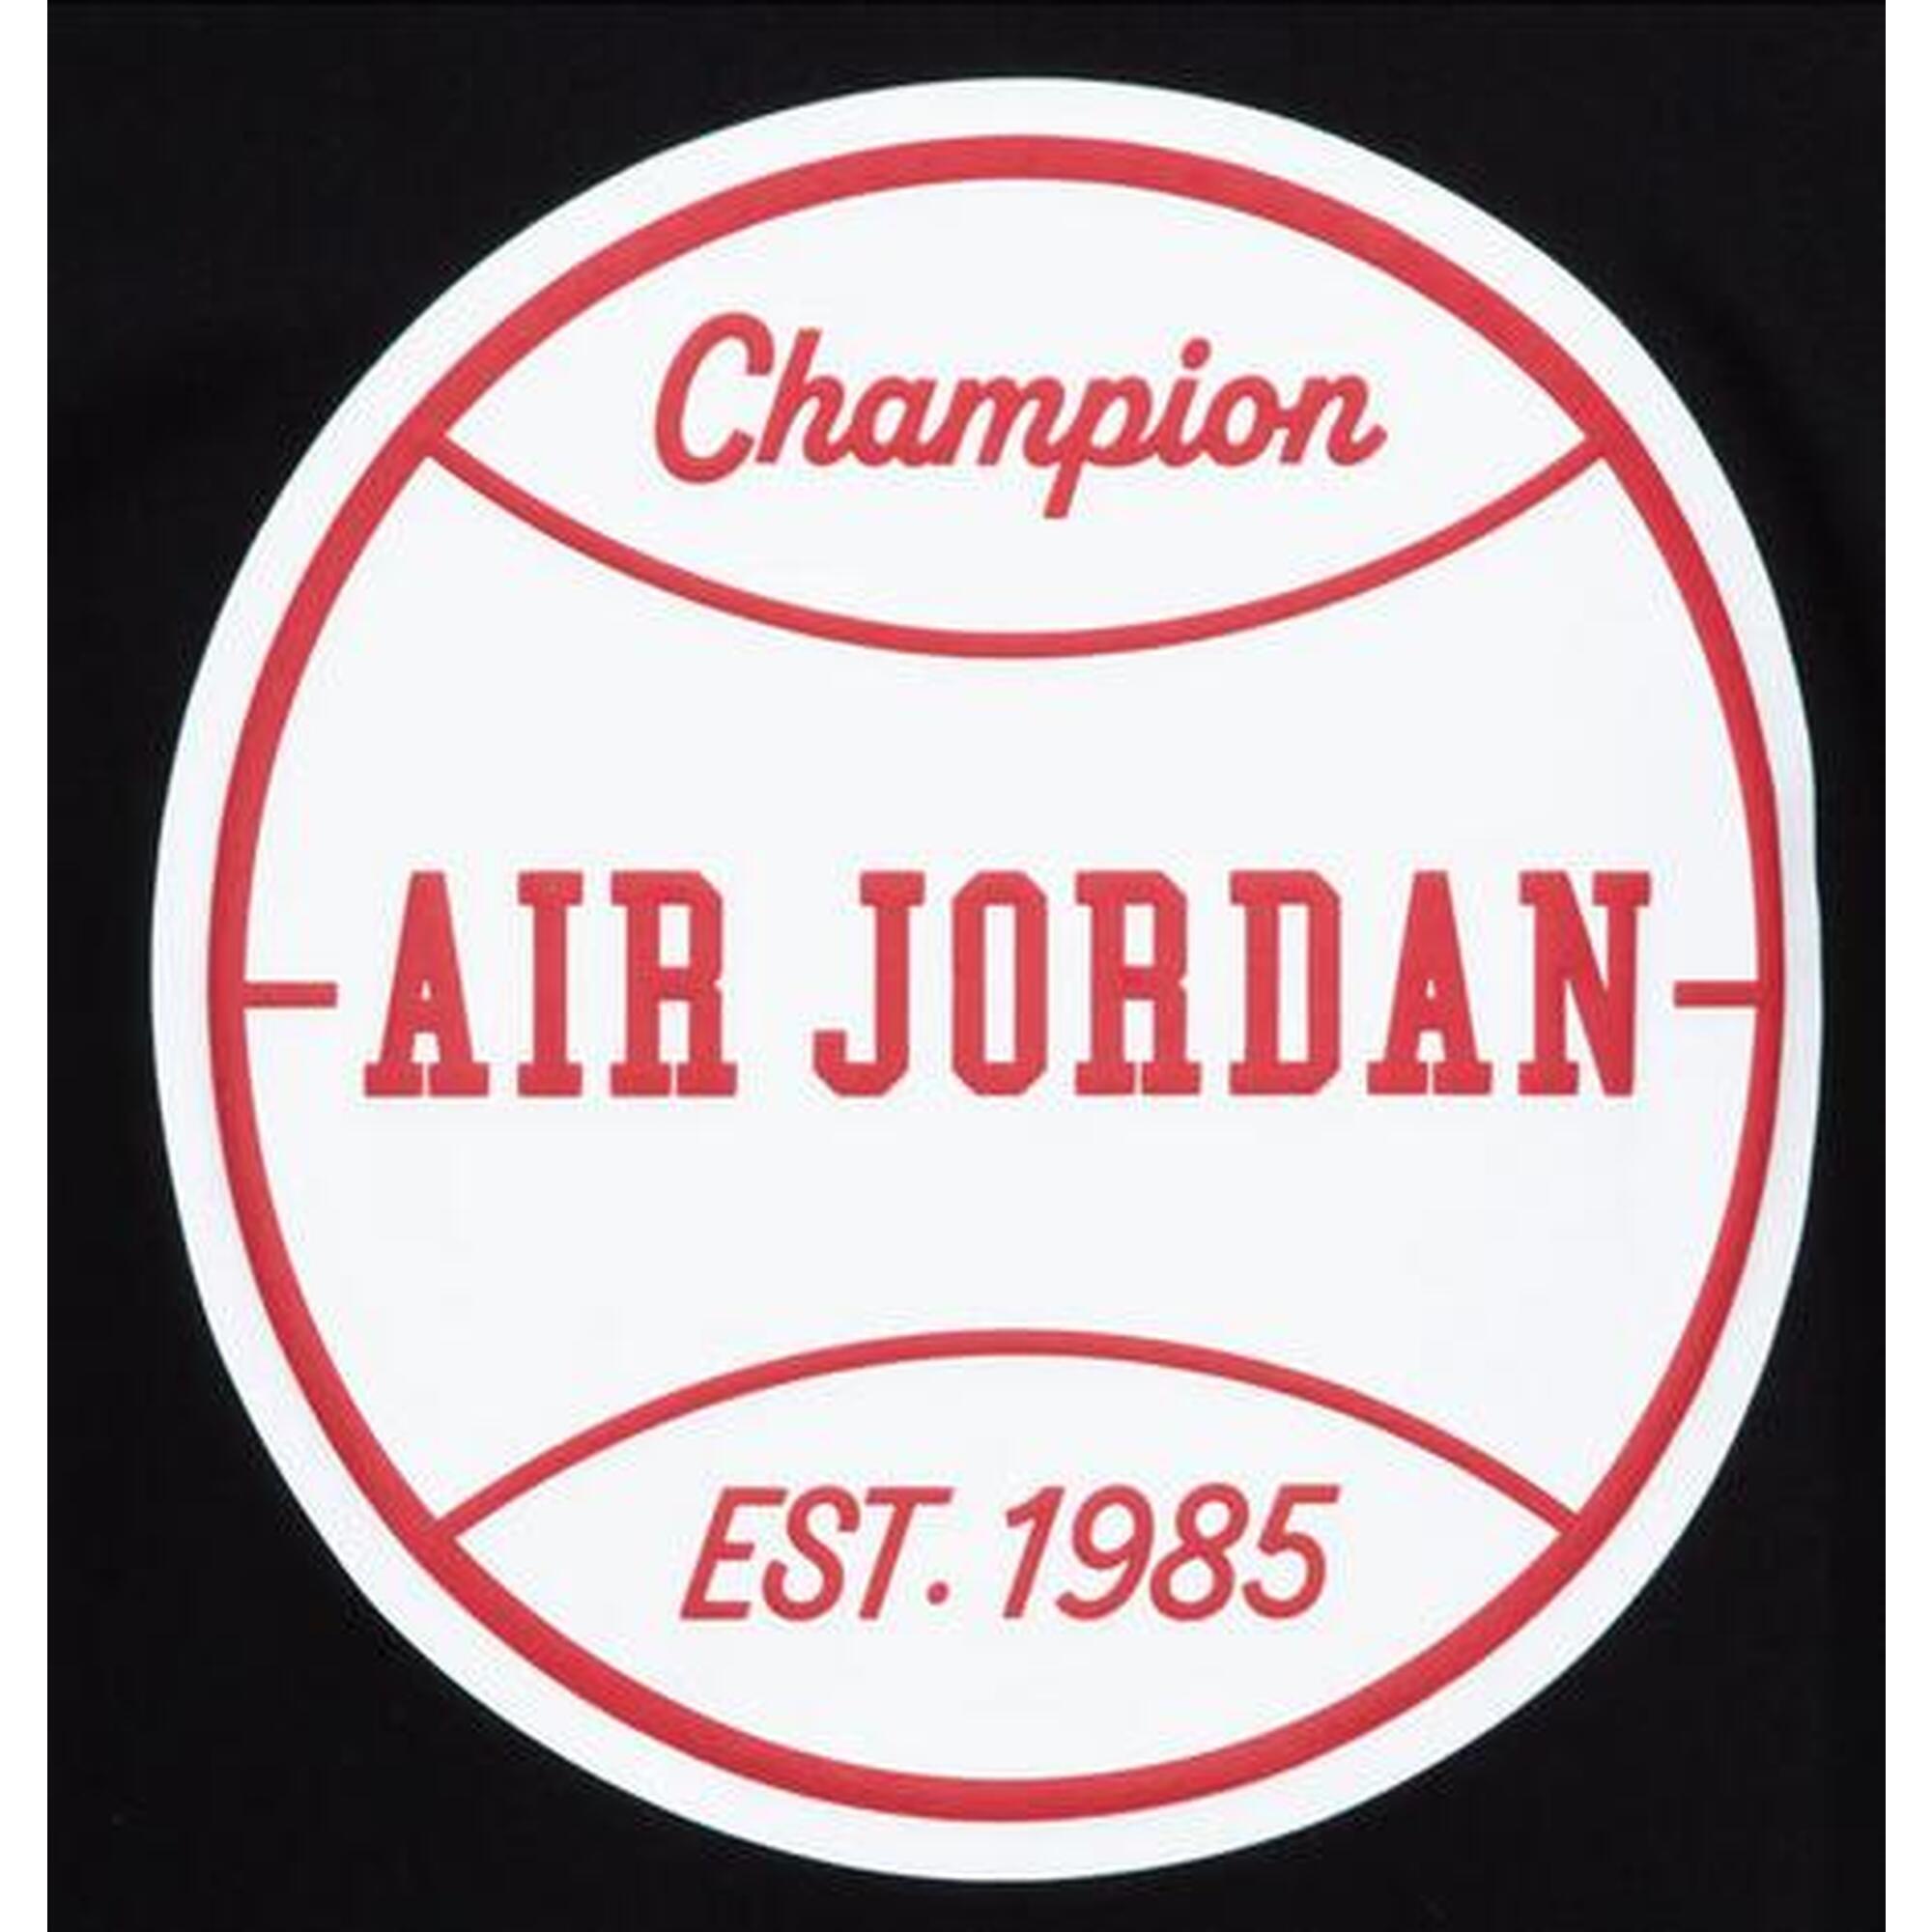 T-shirt ragazzo jordan champion - nero